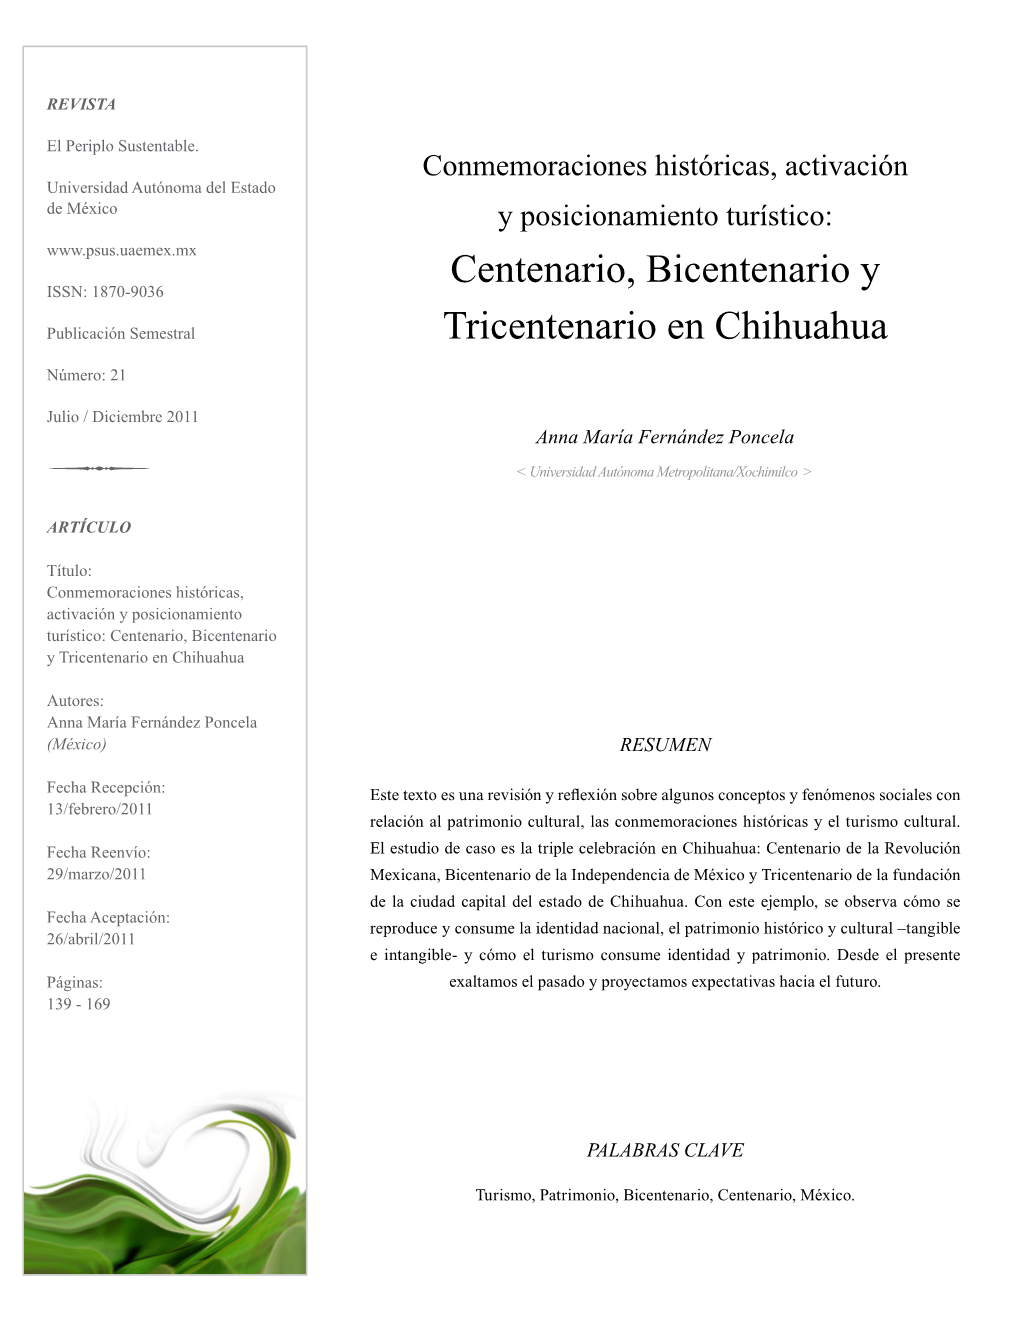 Centenario, Bicentenario Y Tricentenario En Chihuahua